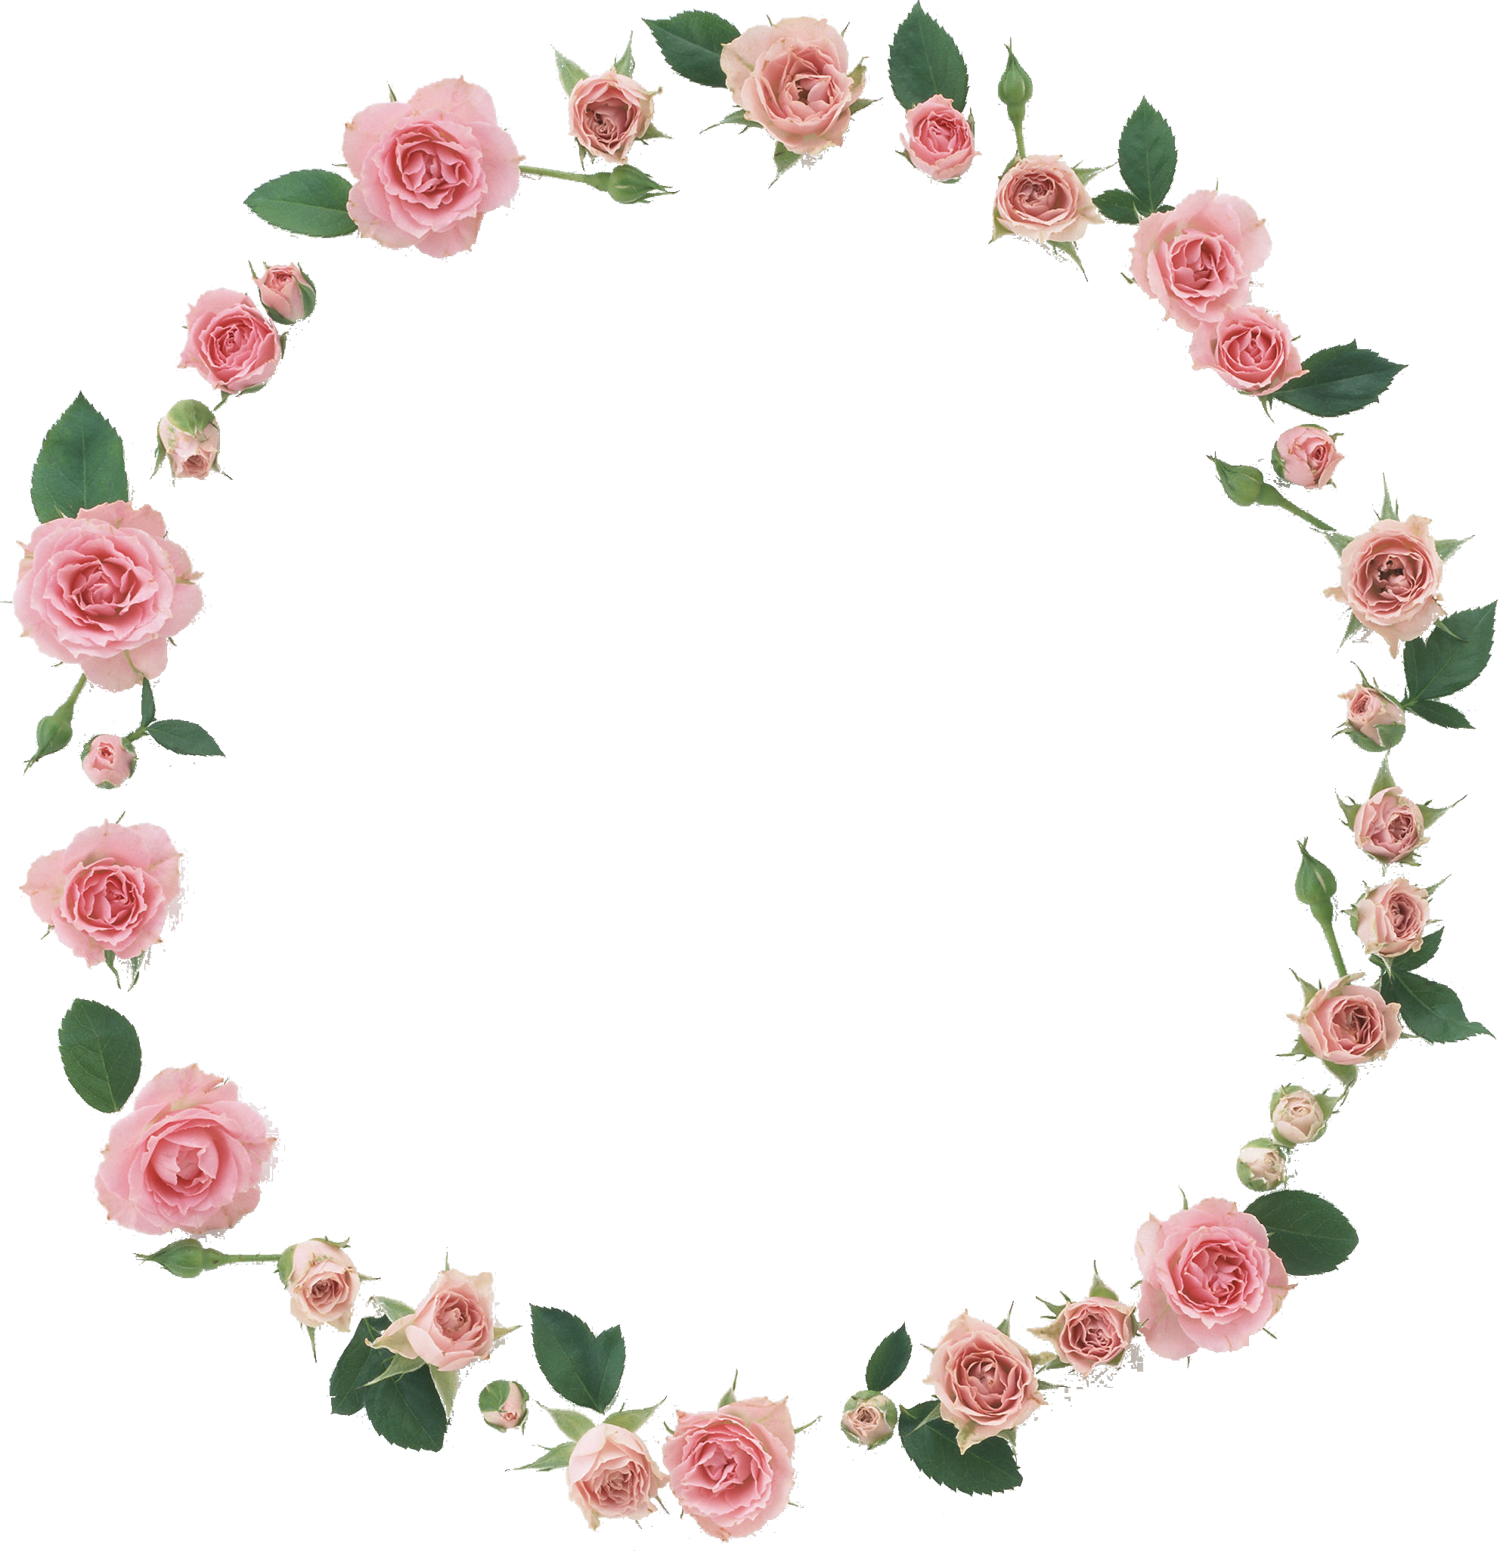 花や葉の写真 画像 フリー素材 フレーム枠no 1016 ピンクのバラ 葉 輪